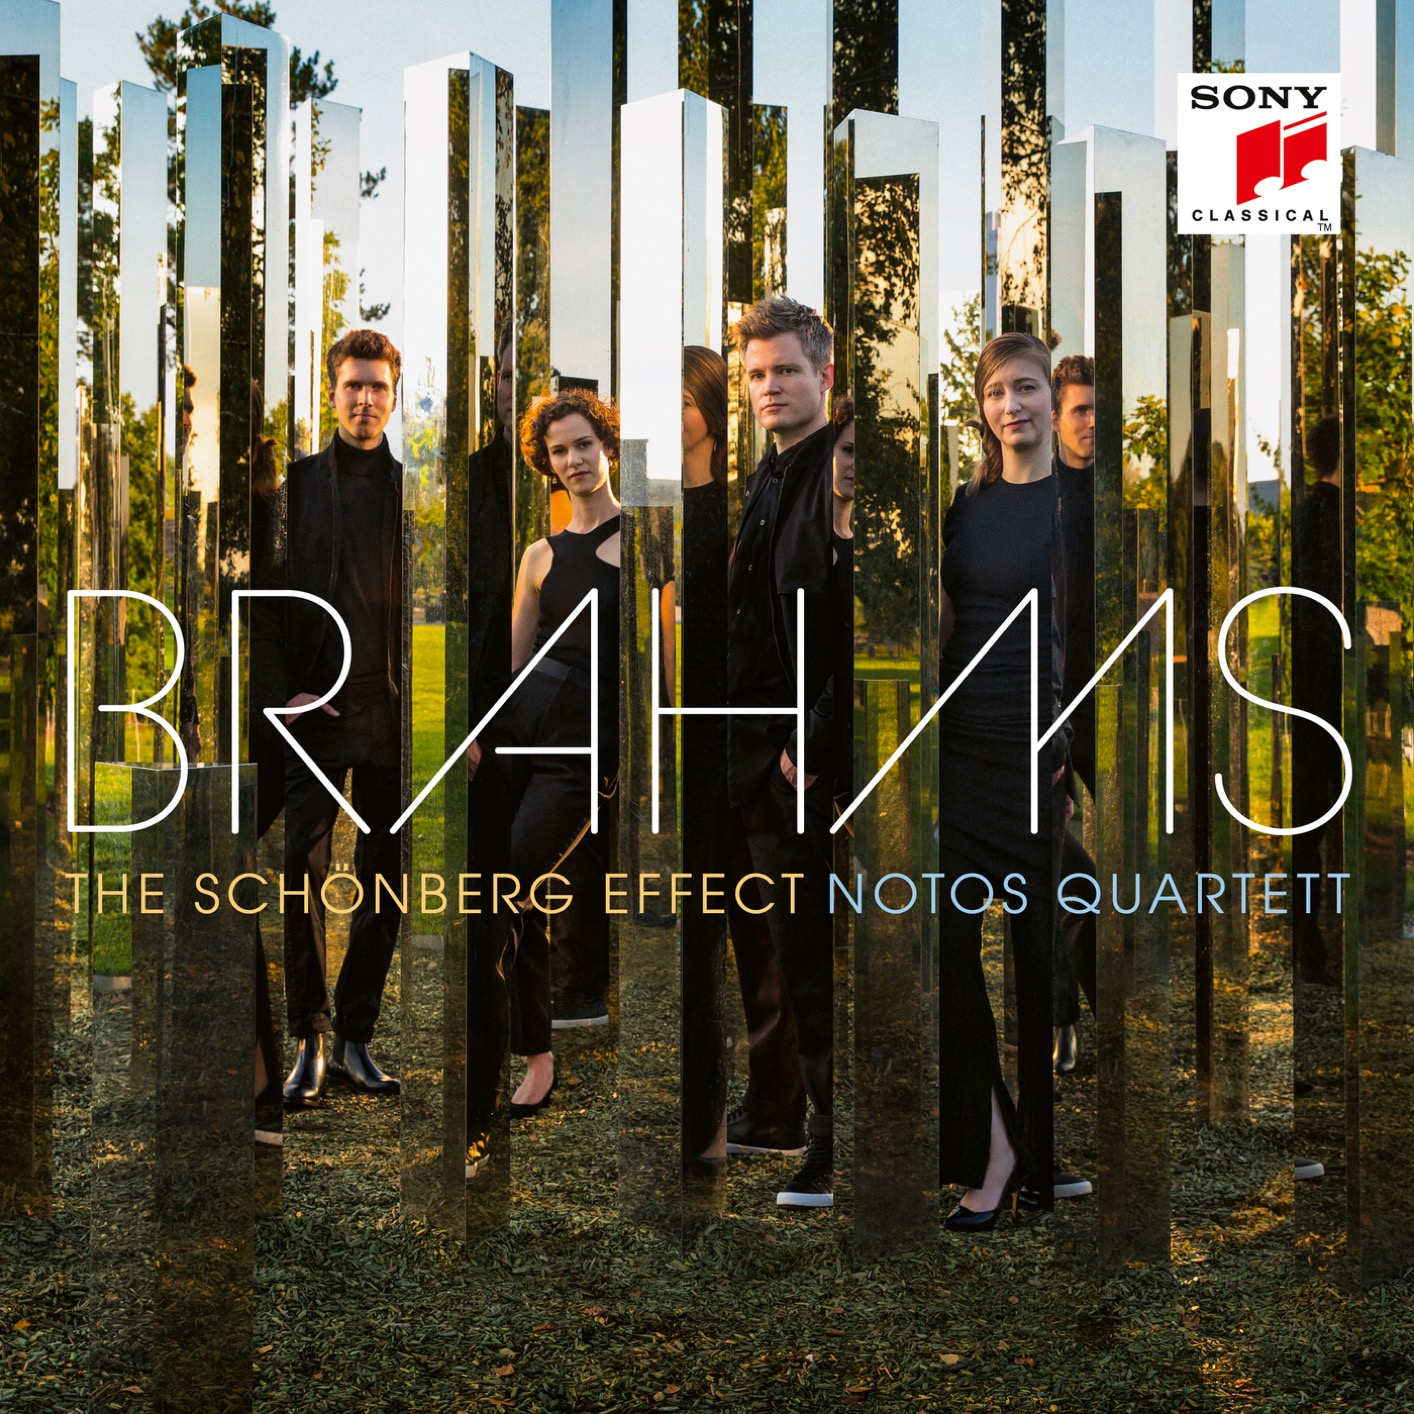 Notos Quartett - Brahms: Piano Quartet No. 1, Symphony No. 3 - The Schonberg Effect (2021) [FLAC 24bit/48kHz]